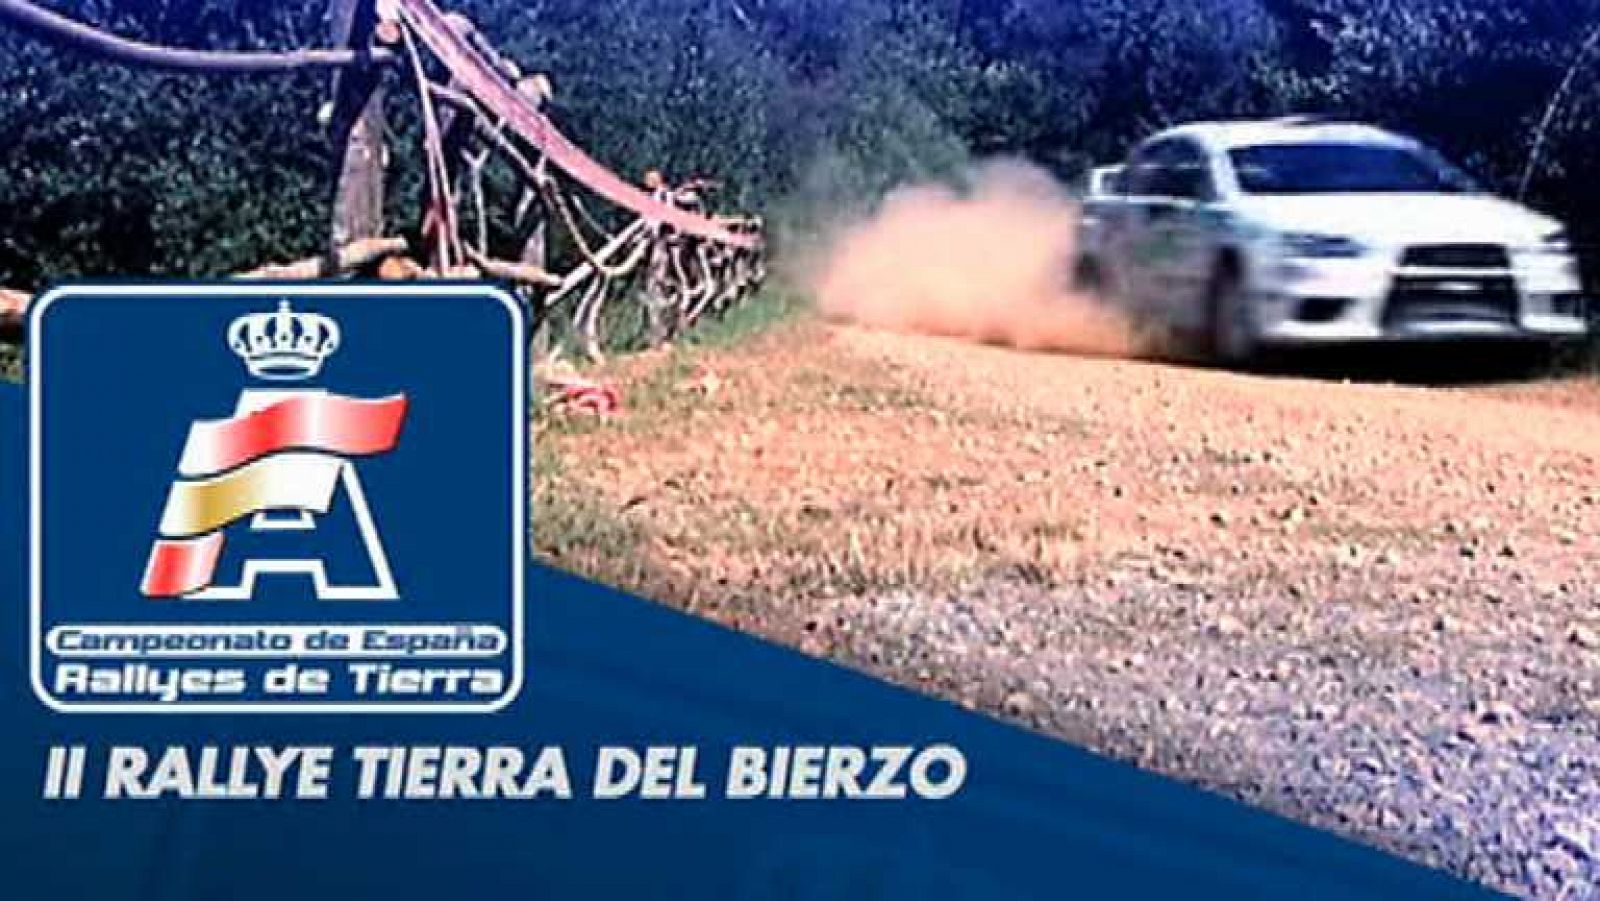 Automovilismo - Campeonato de España Rallye Tierra de Bierzo